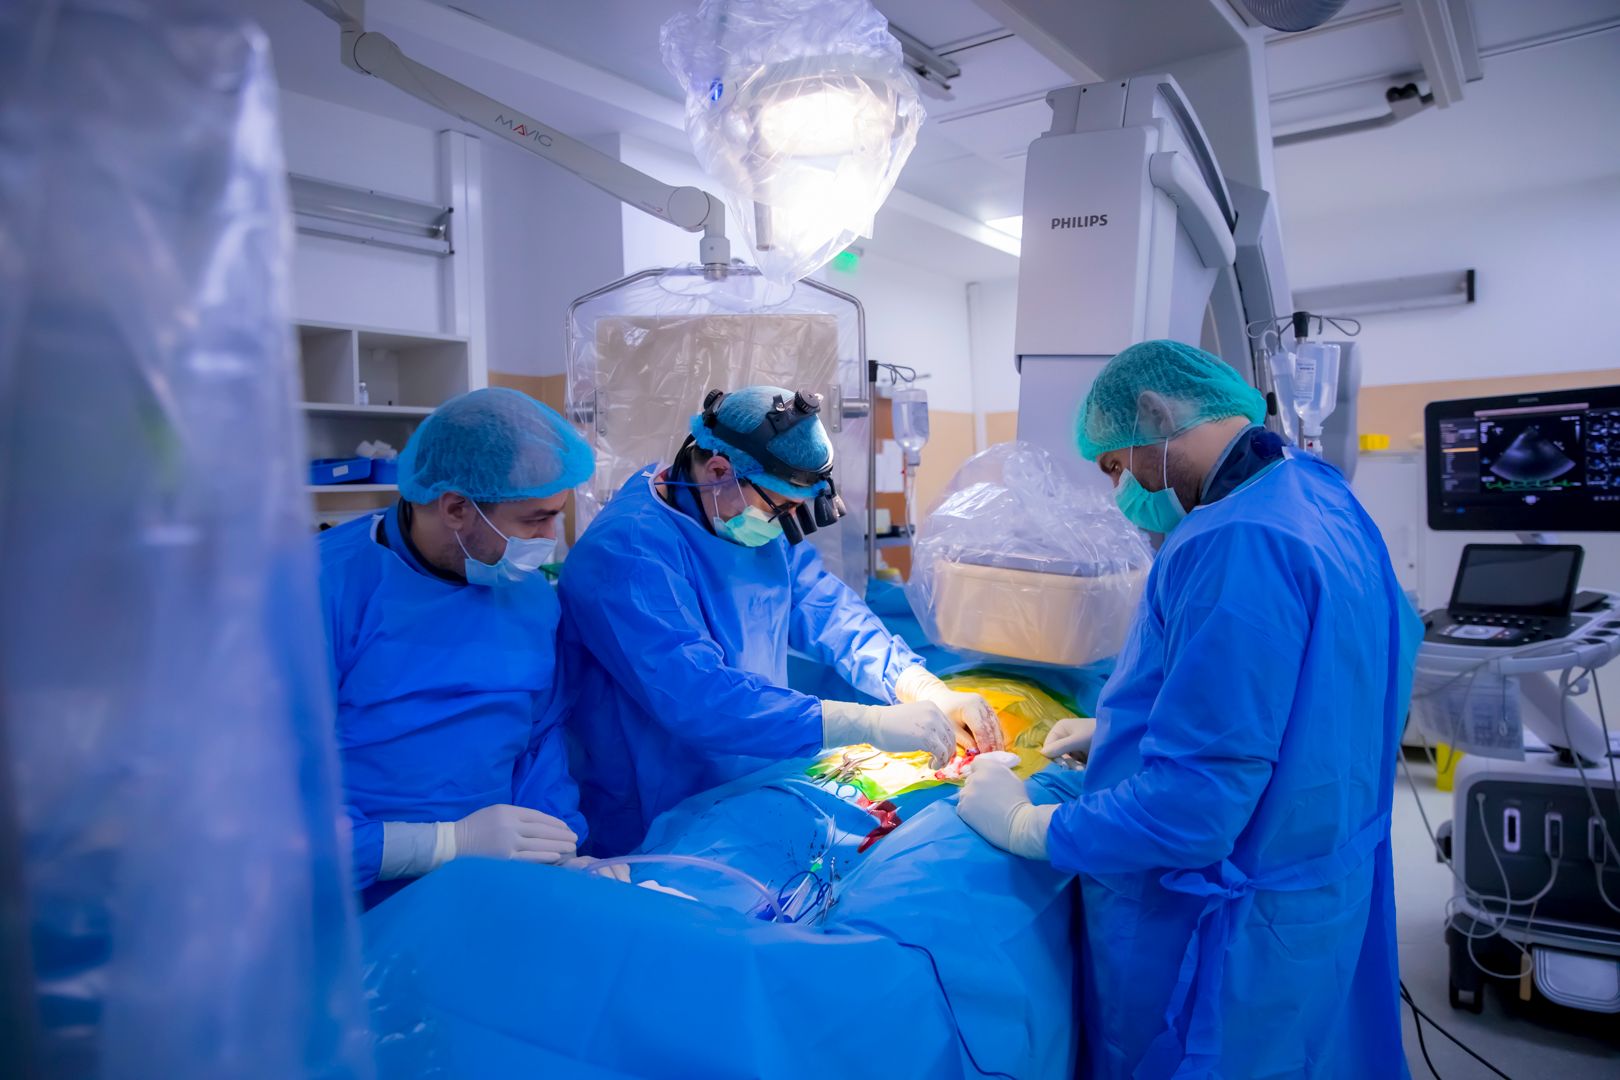 Premieră medicală - Intervenție de implantare de stent aortic la un pacient diagnosticat cu Coarctație de aortă (3)